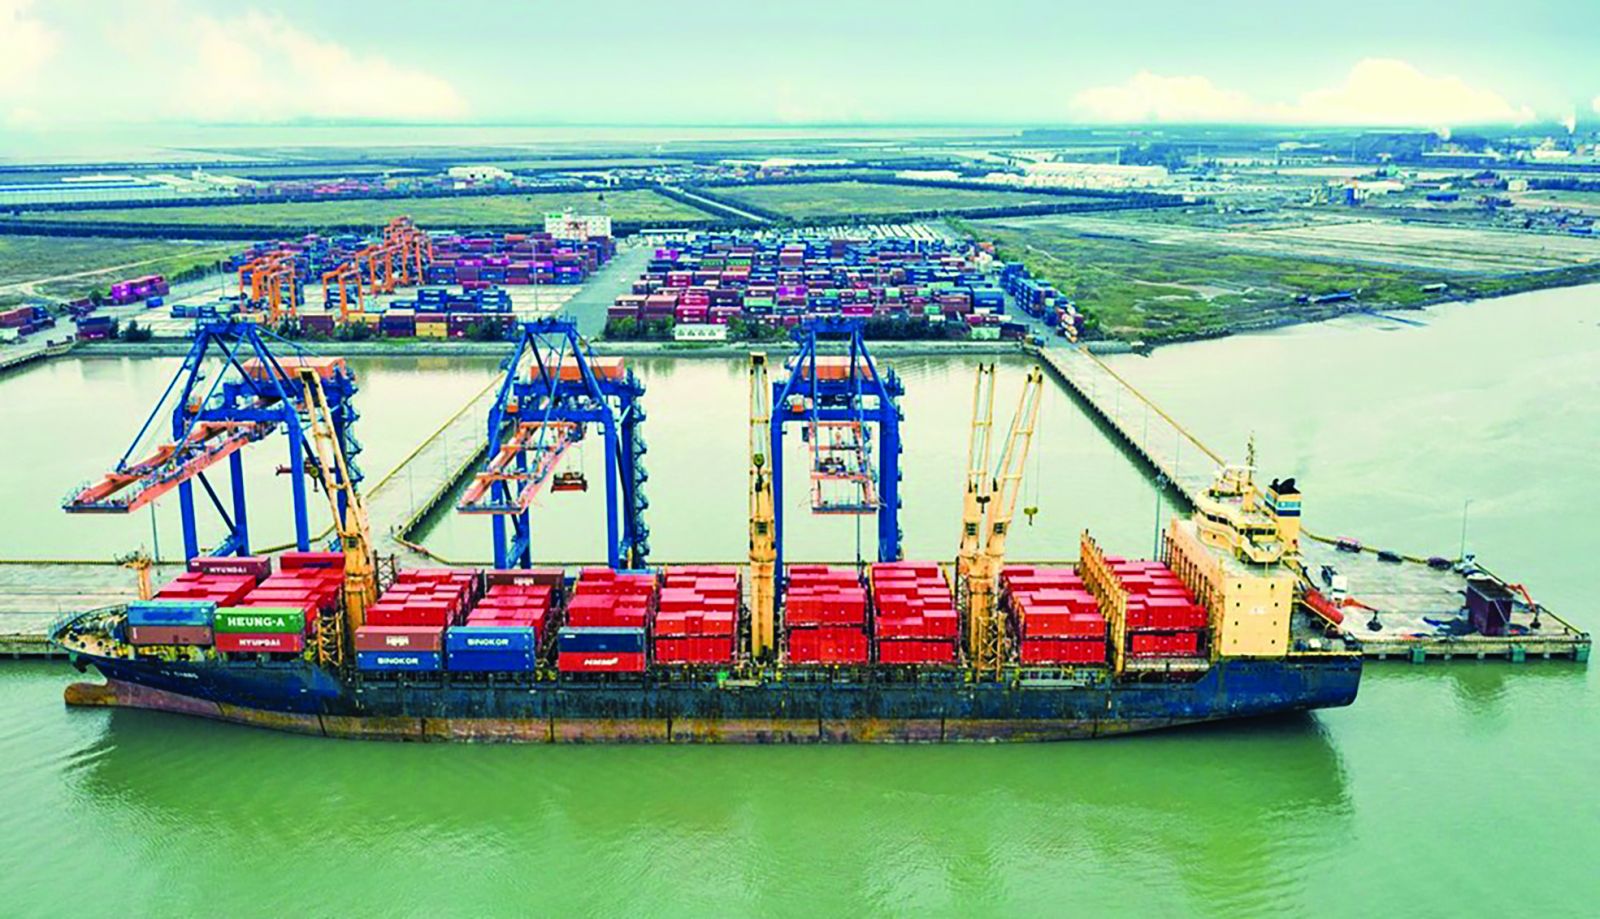  Liên kết cảng biển sẽ giúp tăng công suất làm hàng. Ảnh: Hồng Phong